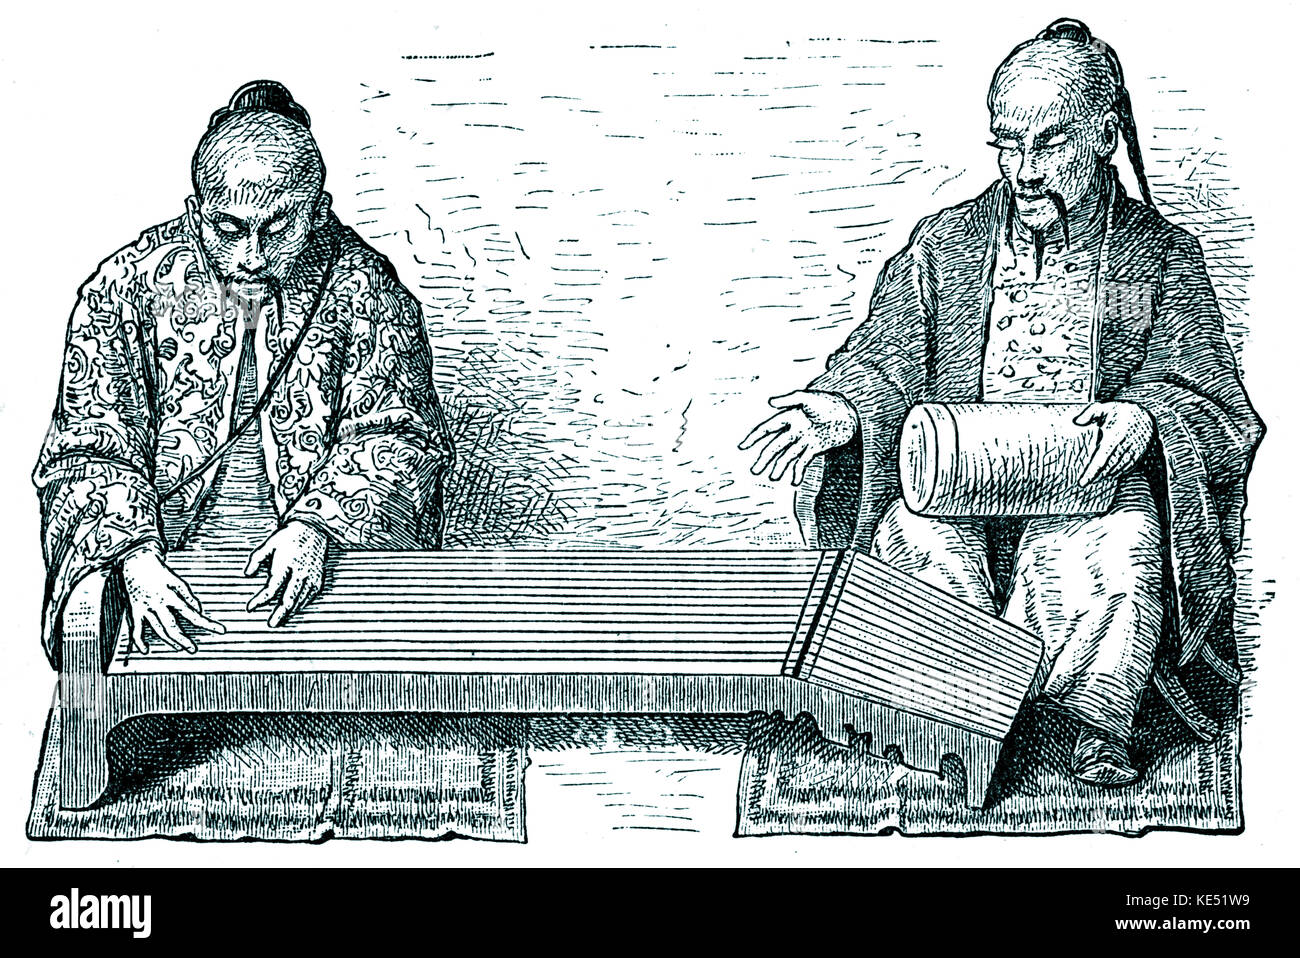 Ché und Po-Fou, alte chinesische Instrumente, die von blinden Musikern gespielt. Ché (wörtlich übersetzt "die wunderbare"): Tabelle - Psalter, neun Fuß in der Länge, mit 25 Saiten, erfunden von Fo-Hi. Immer von der Po-Fou begleitet. Stockfoto